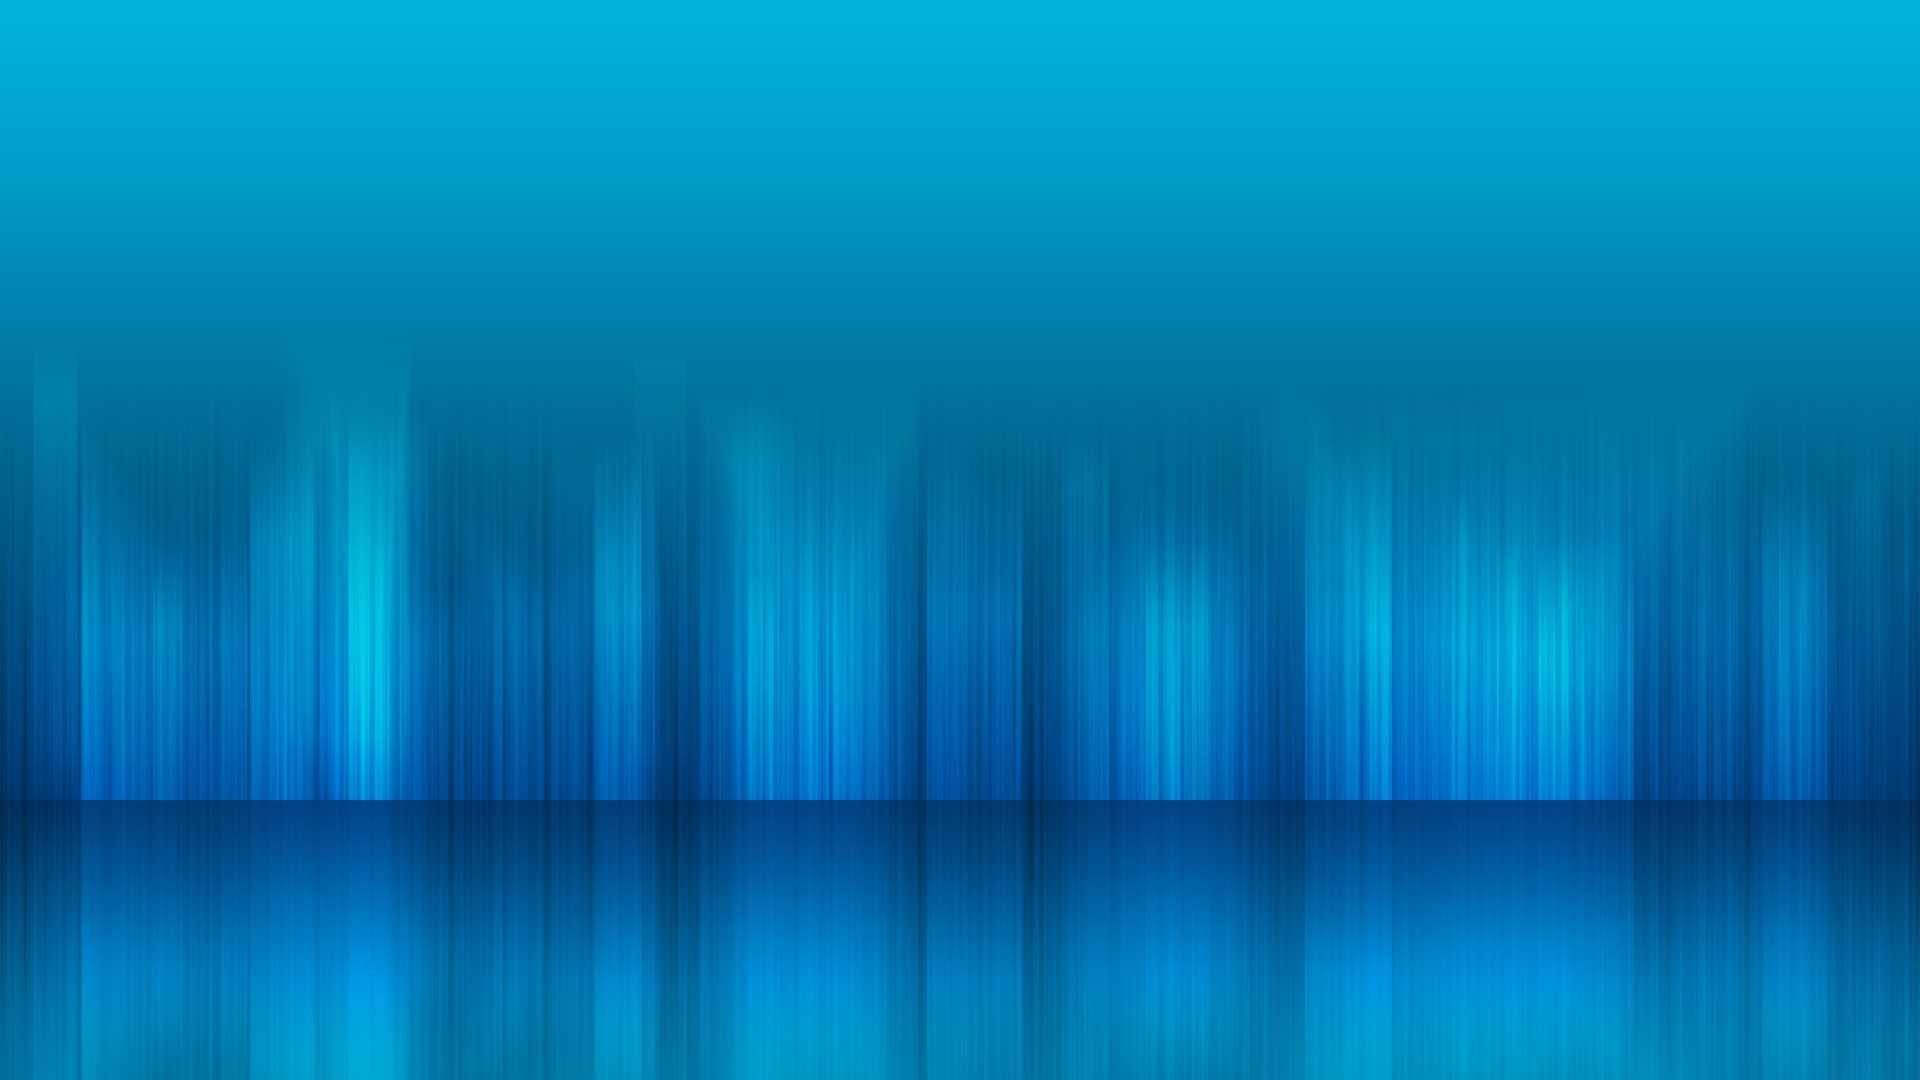 1920 x 1080 · jpeg - Light Blue Wallpaper Backgrounds | PixelsTalk